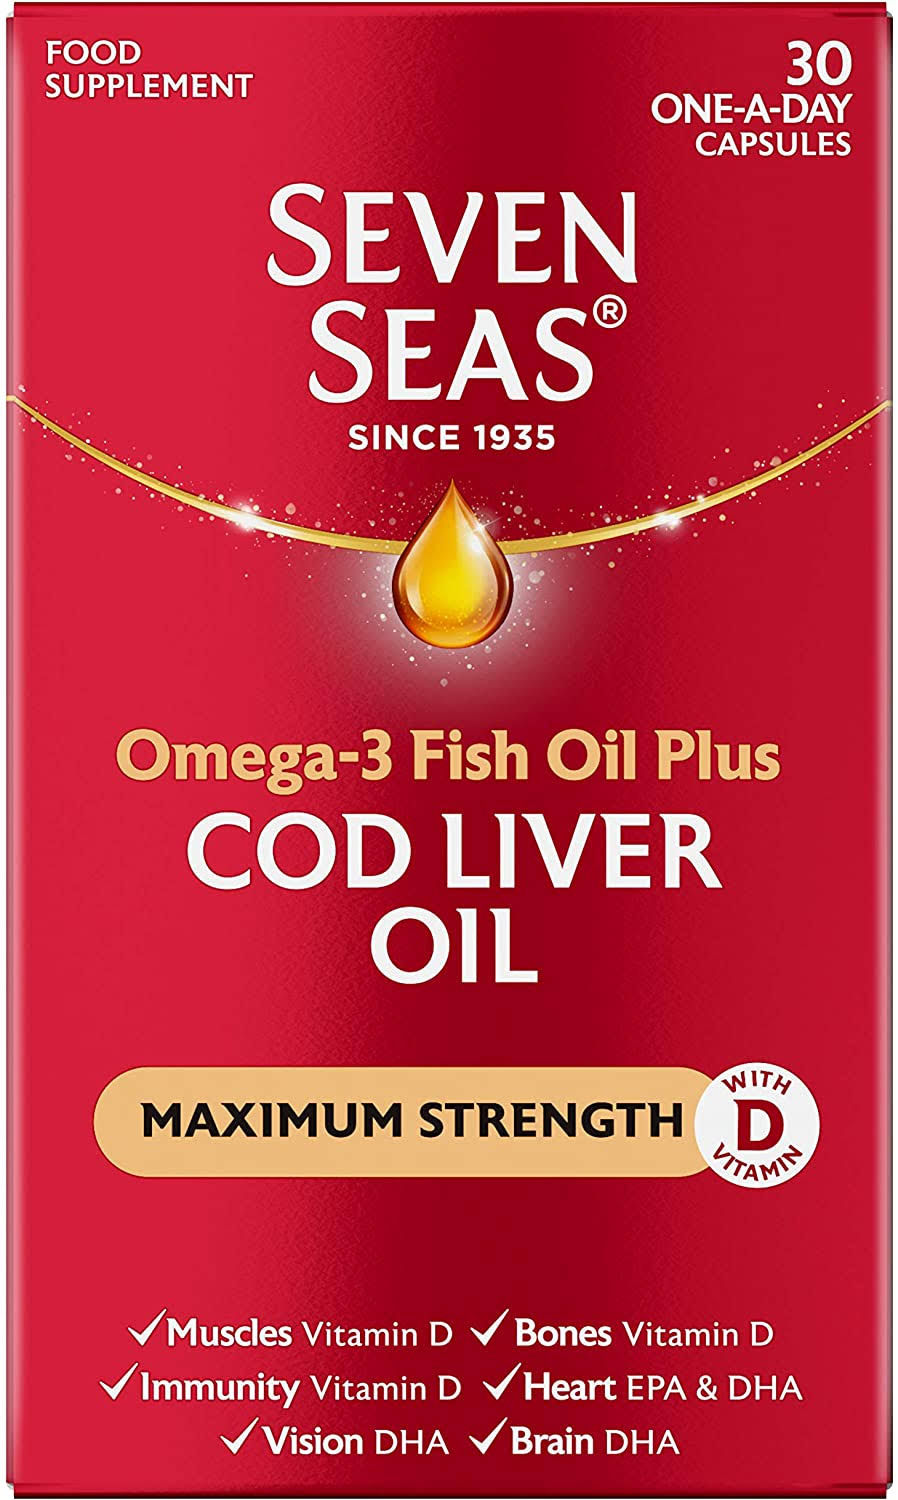 Seven Seas Cod Liver Oil Plus Omega 3 Fish Oil Maximum Strength Capsules - 30ct